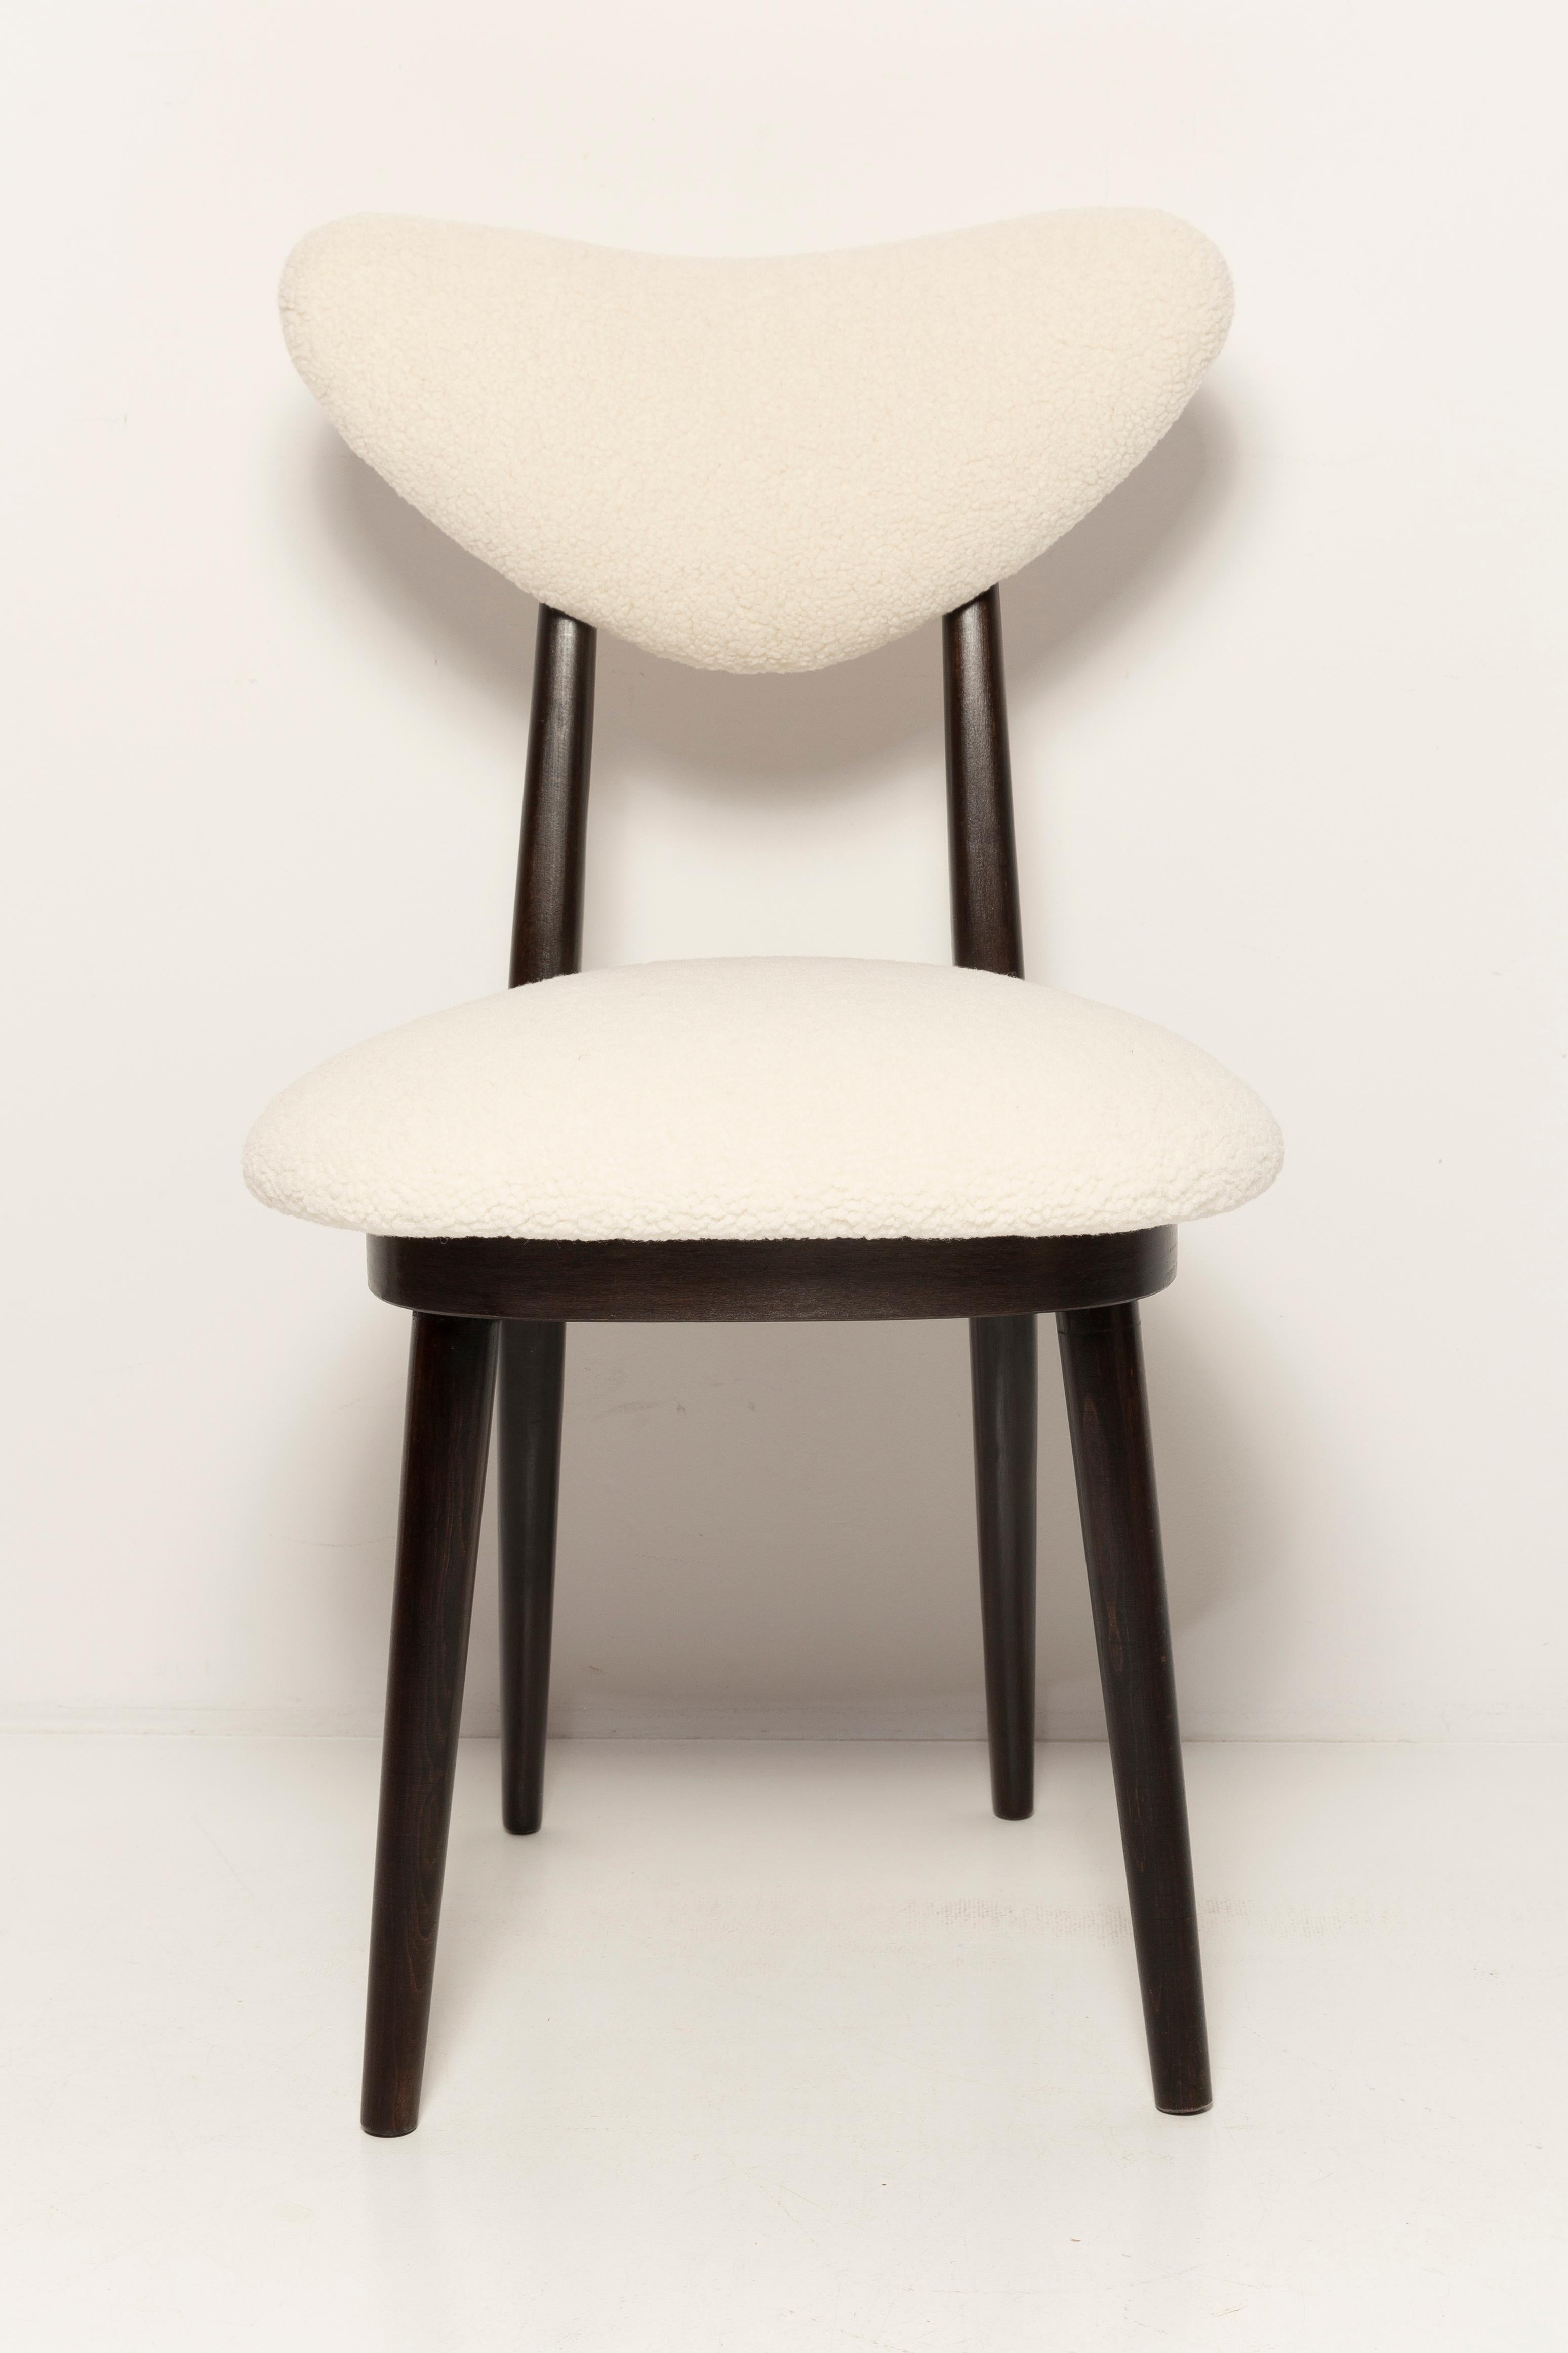 Velvet Midcentury Light Bouclé Heart Chair, Europe, 1960s For Sale